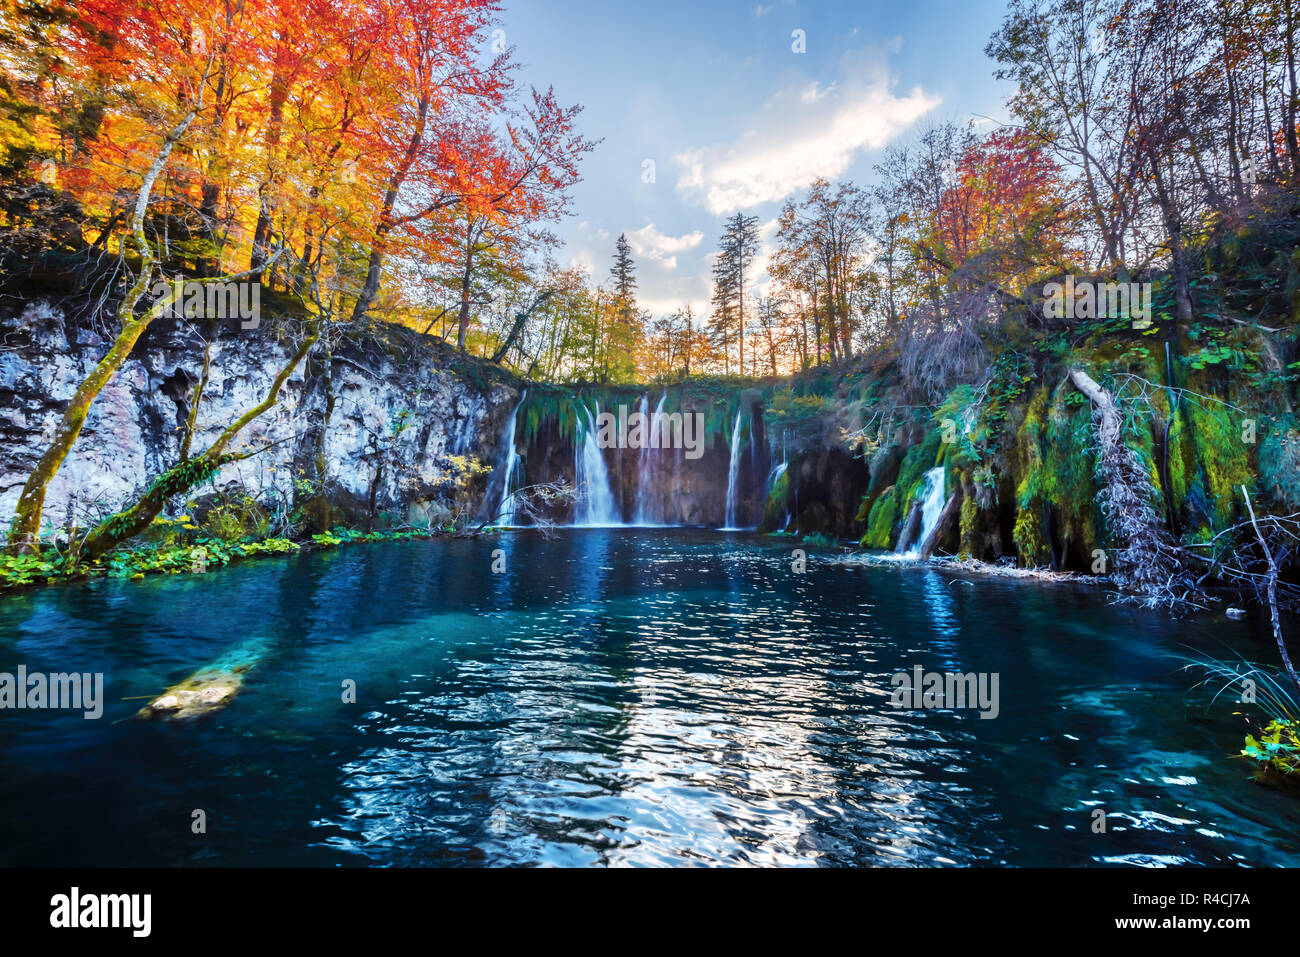 Amazing waterfall avec de l'eau d'un bleu pur dans des lacs de Plitvice. Forêt d'automne orange sur arrière-plan. Parc National de Plitvice, Croatie. Photographie de paysage Banque D'Images